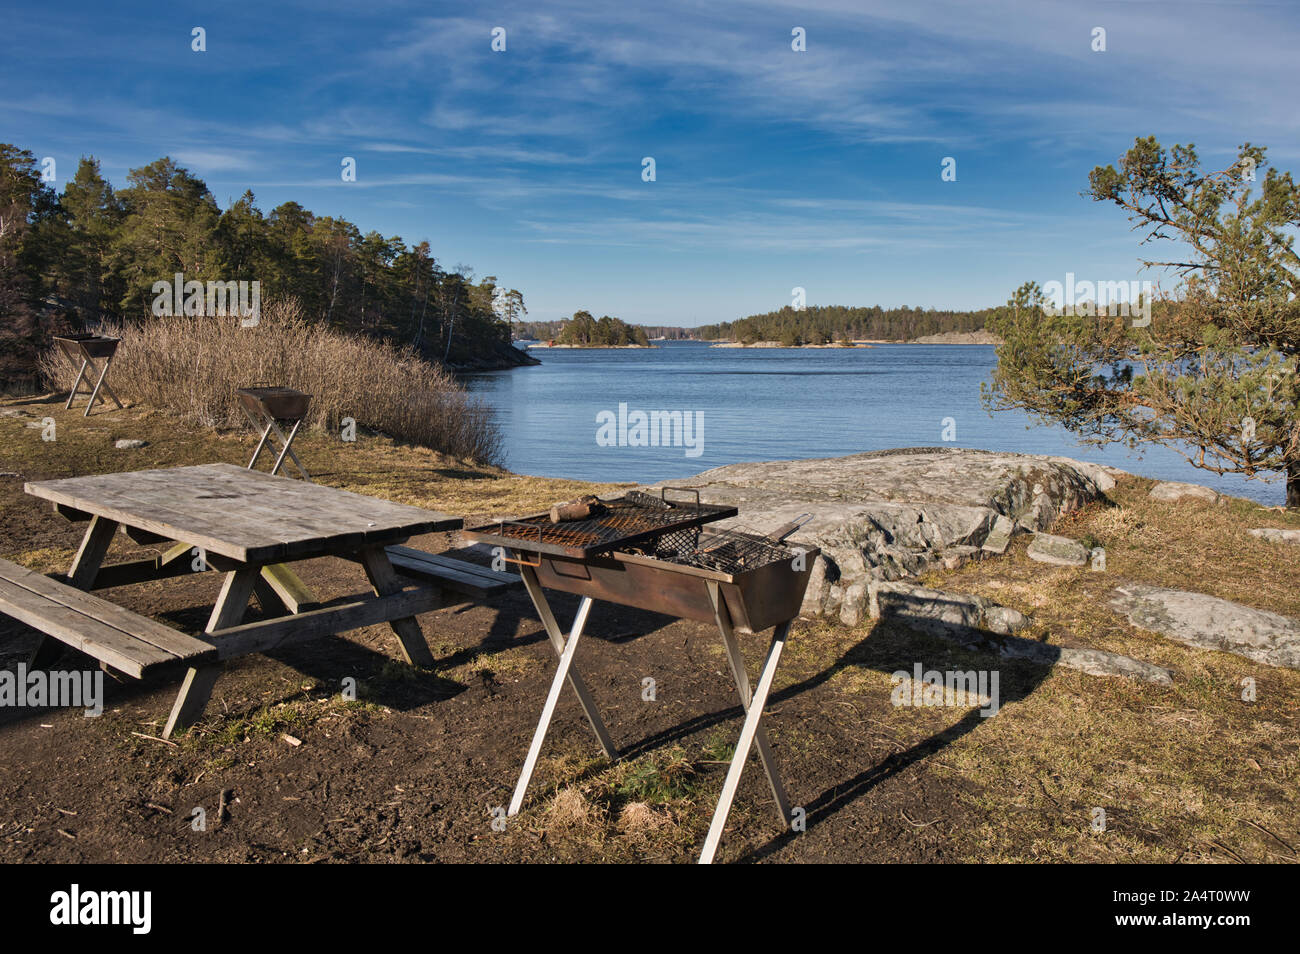 Barbecue à la rouille et table de pique-nique extérieure en bois par lac, réserve naturelle de Bjorno (Bjorno Naturareservat), archipel de Stockholm, Suède Banque D'Images